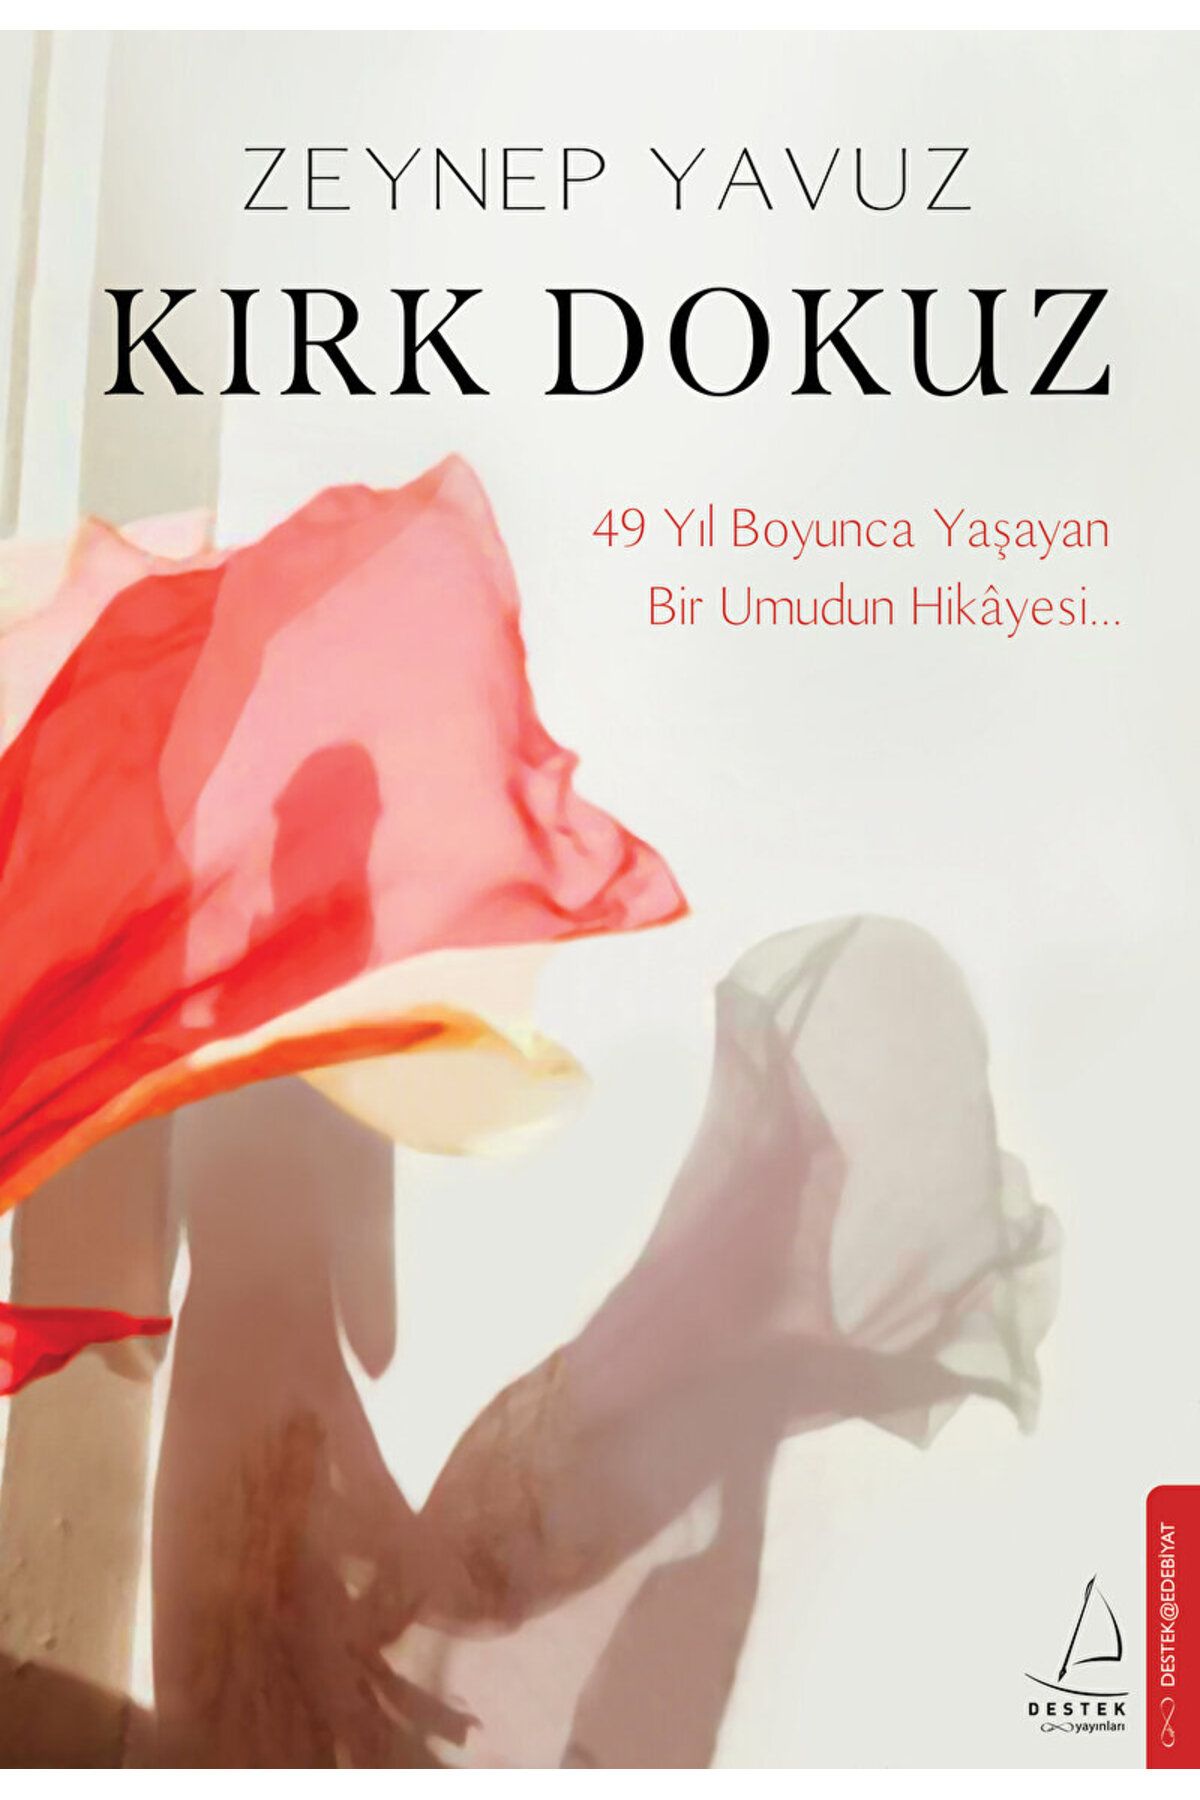 Destek Yayınları Kırk Dokuz / Zeynep Yavuz / Destek Yayınları / 9786256608139